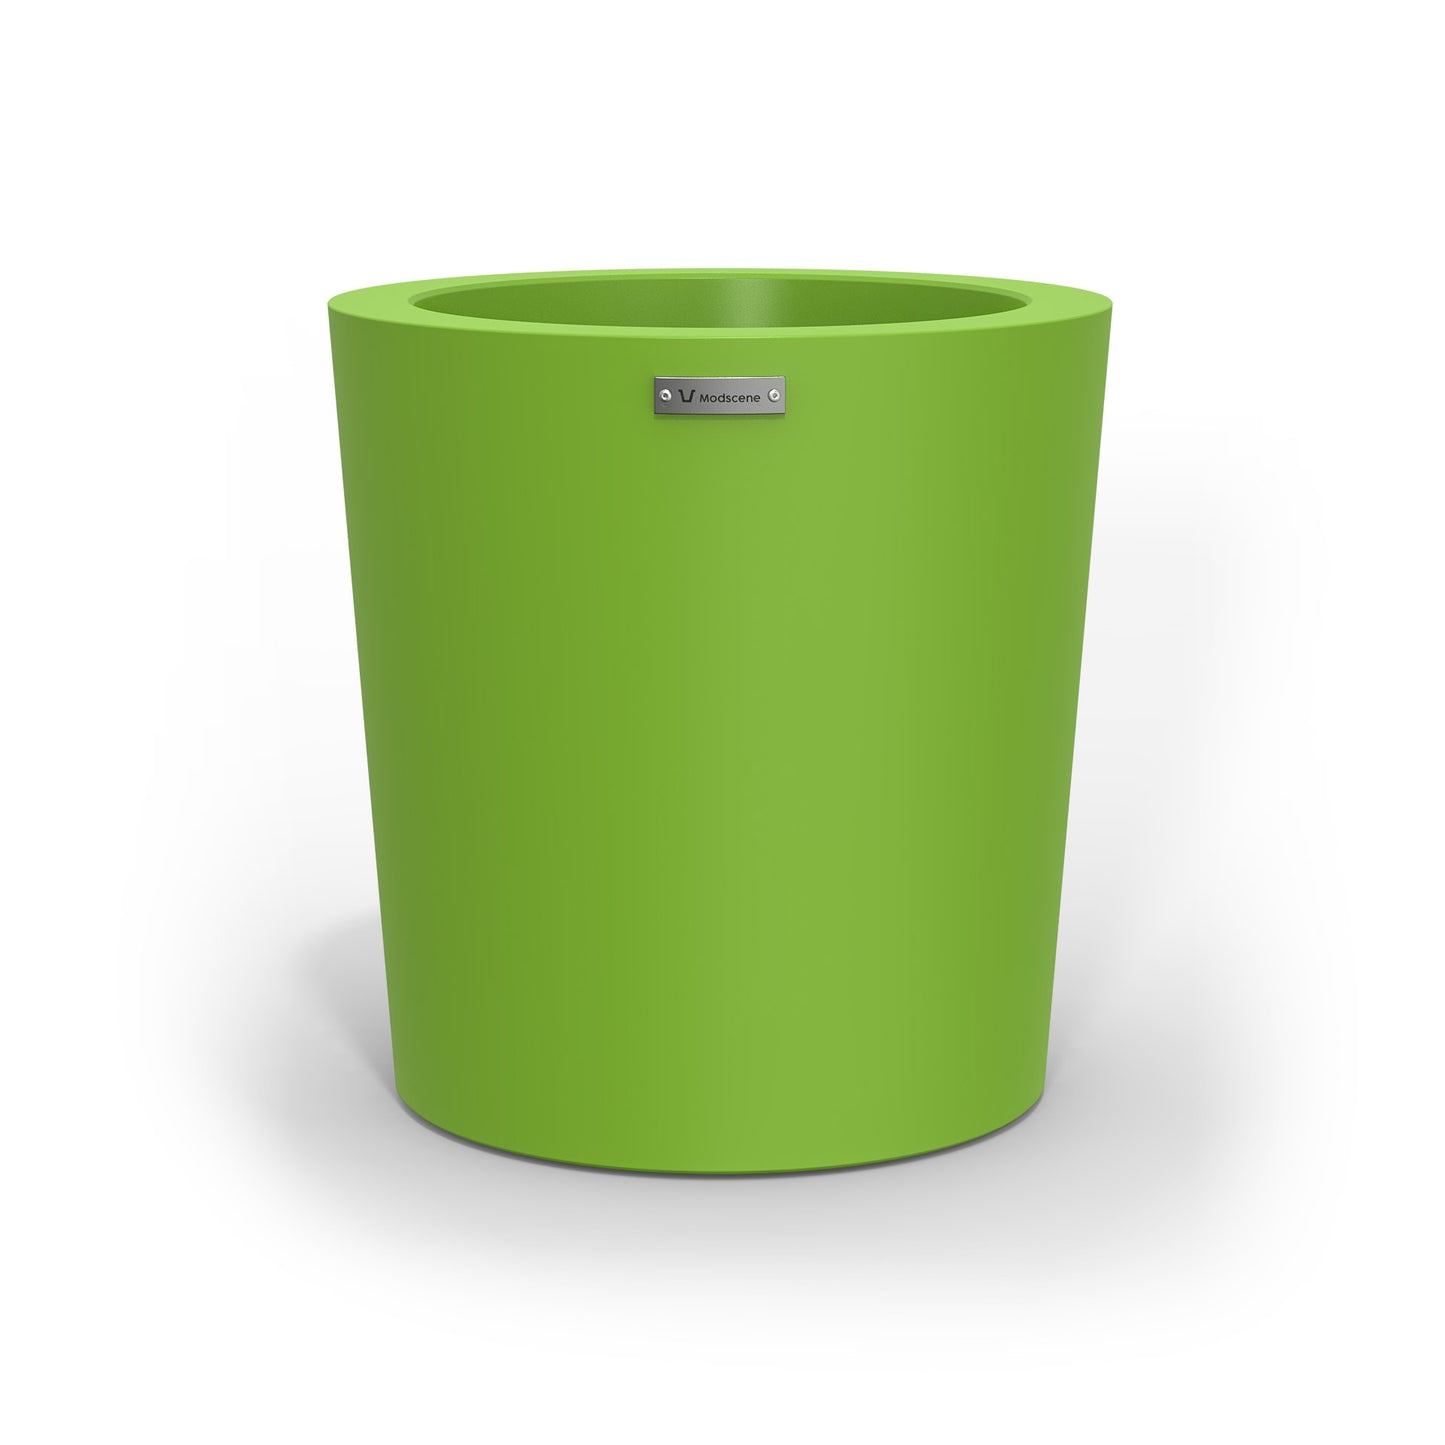 A modern designer planter pot in a lime green colour. 